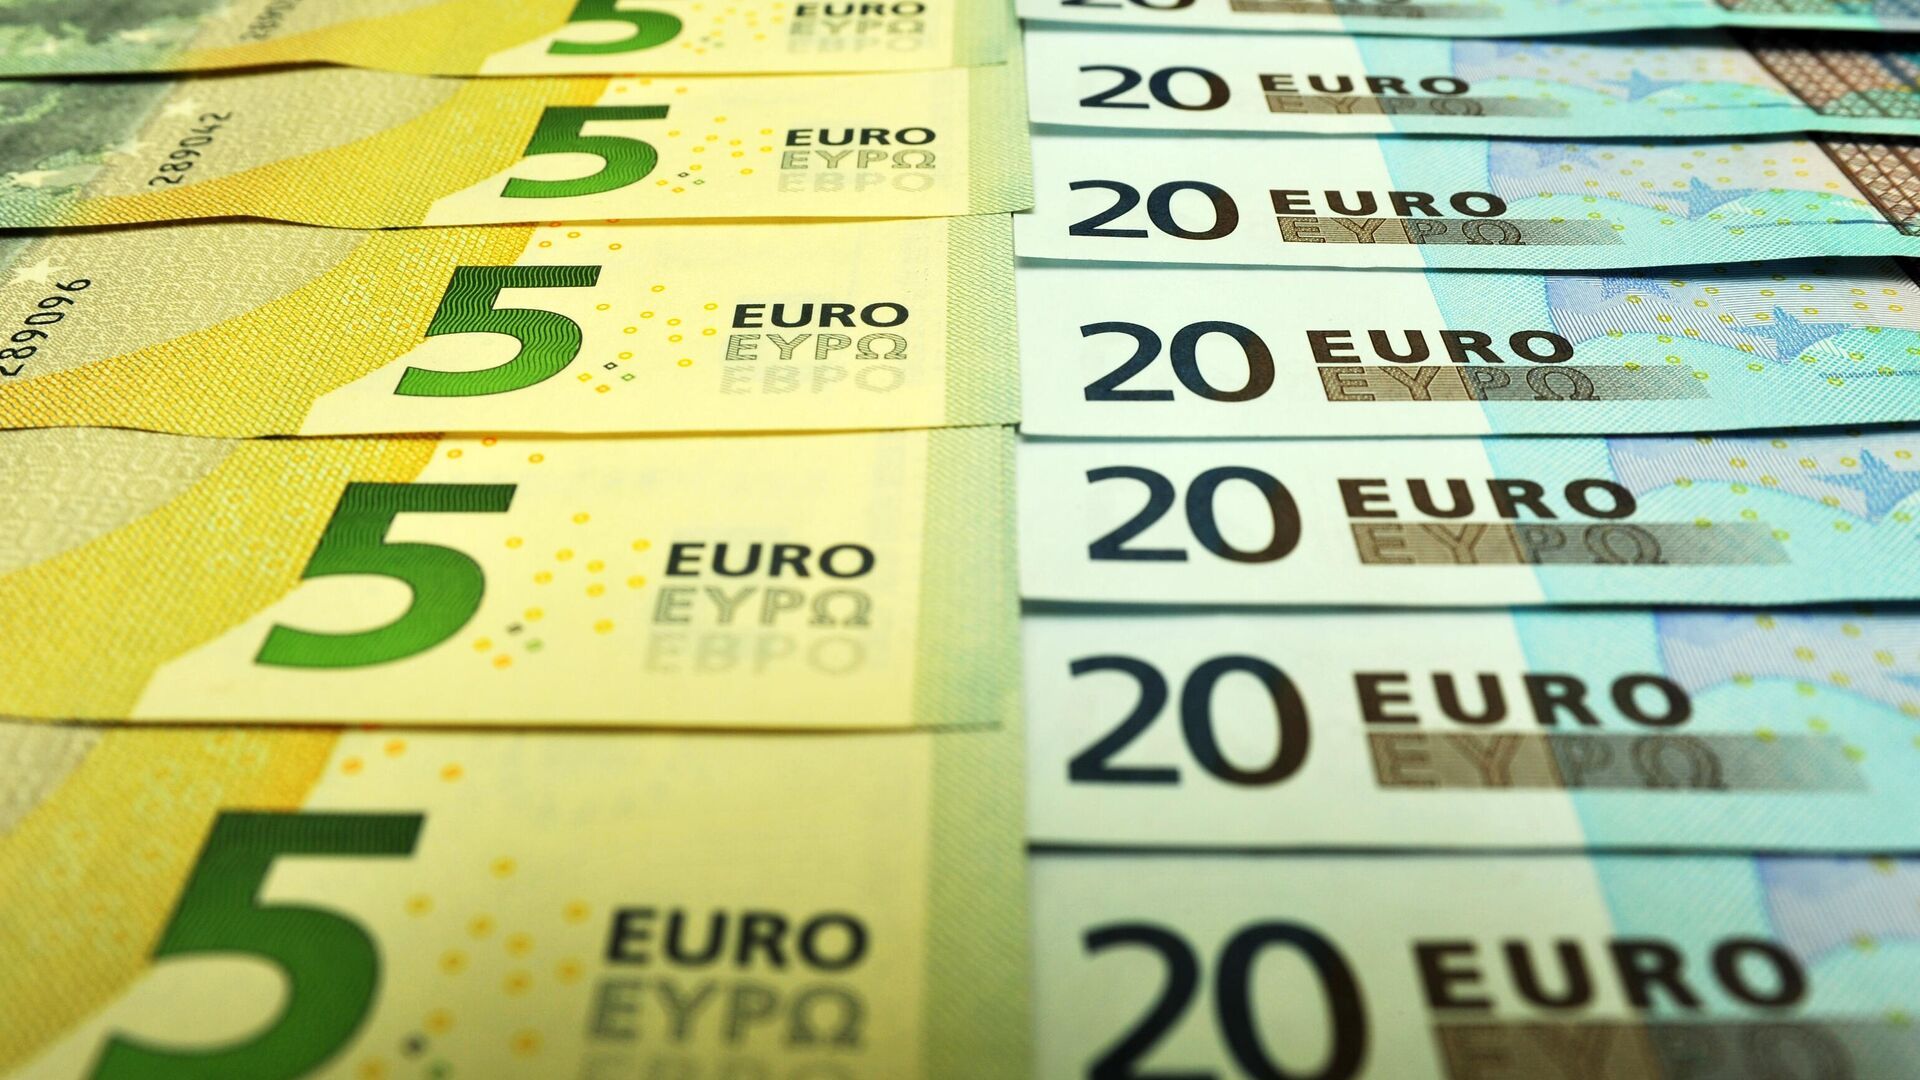 Евро дешевле 94 сомов - официальные курсы валют